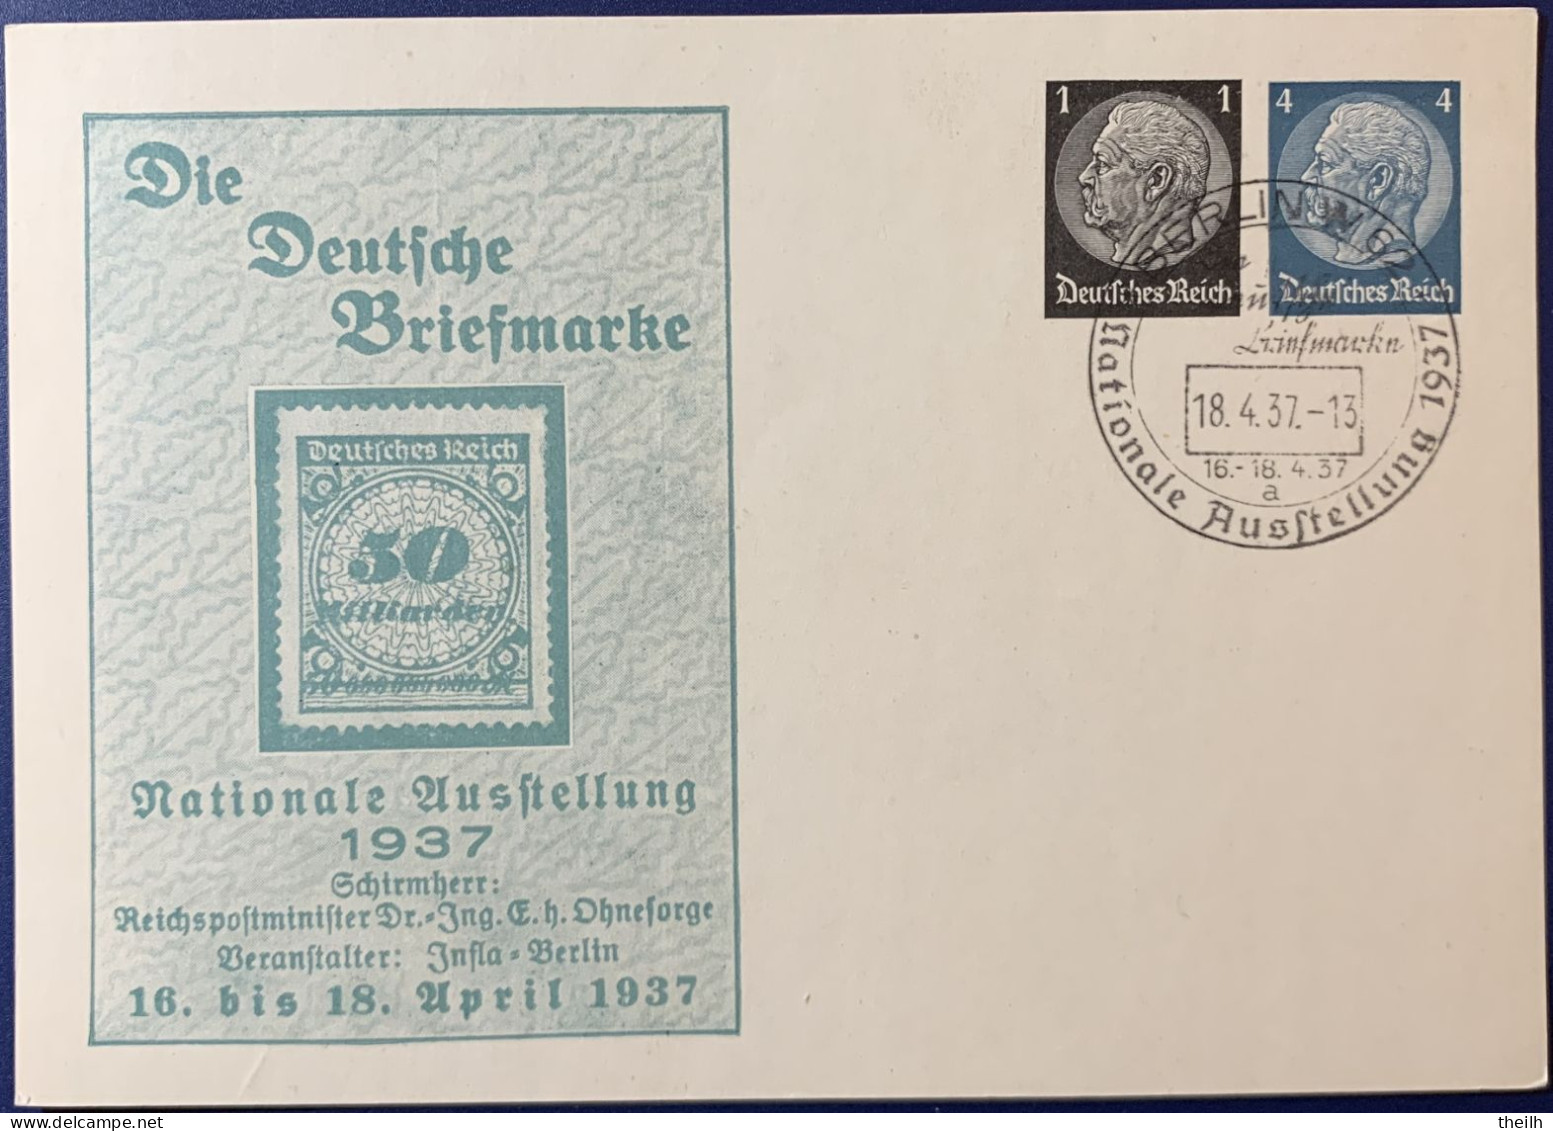 Privatganzsache Postkarte, "Briefmarkenausstellung Berlin 1937" - Entiers Postaux Privés